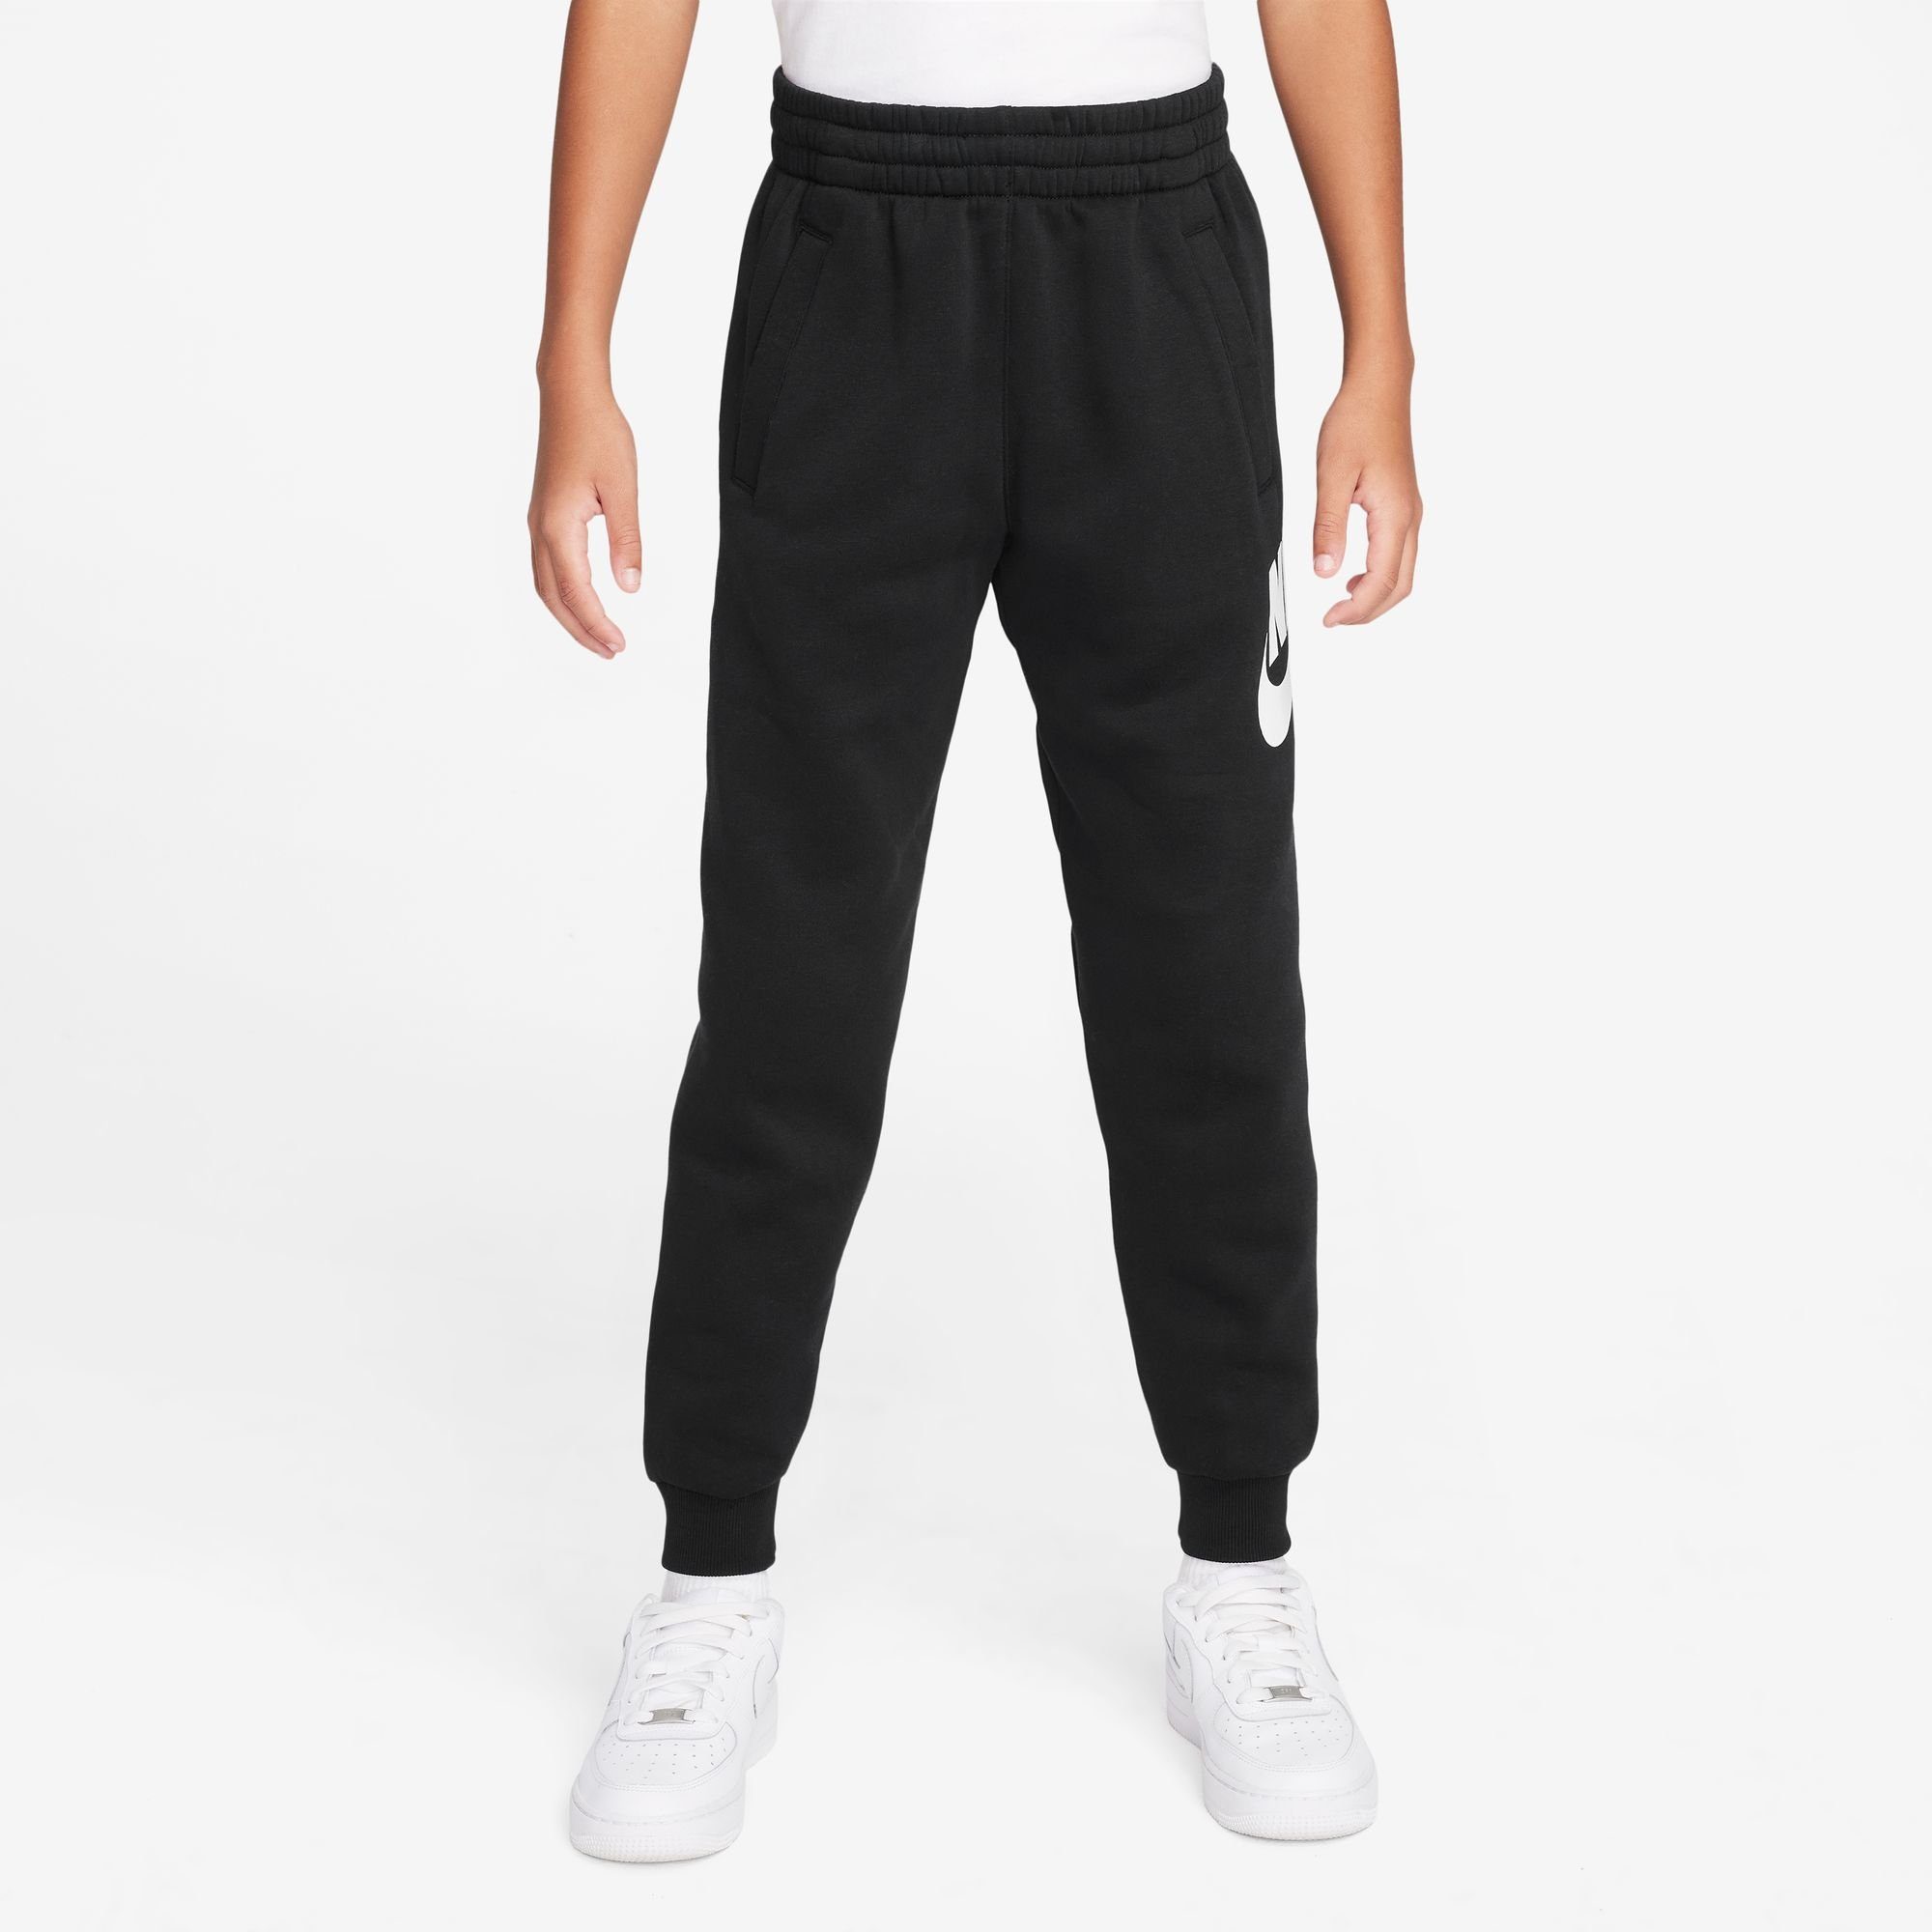 BIG FLEECE PANTS KIDS' Jogginghose BLACK/WHITE Sportswear JOGGER CLUB Nike